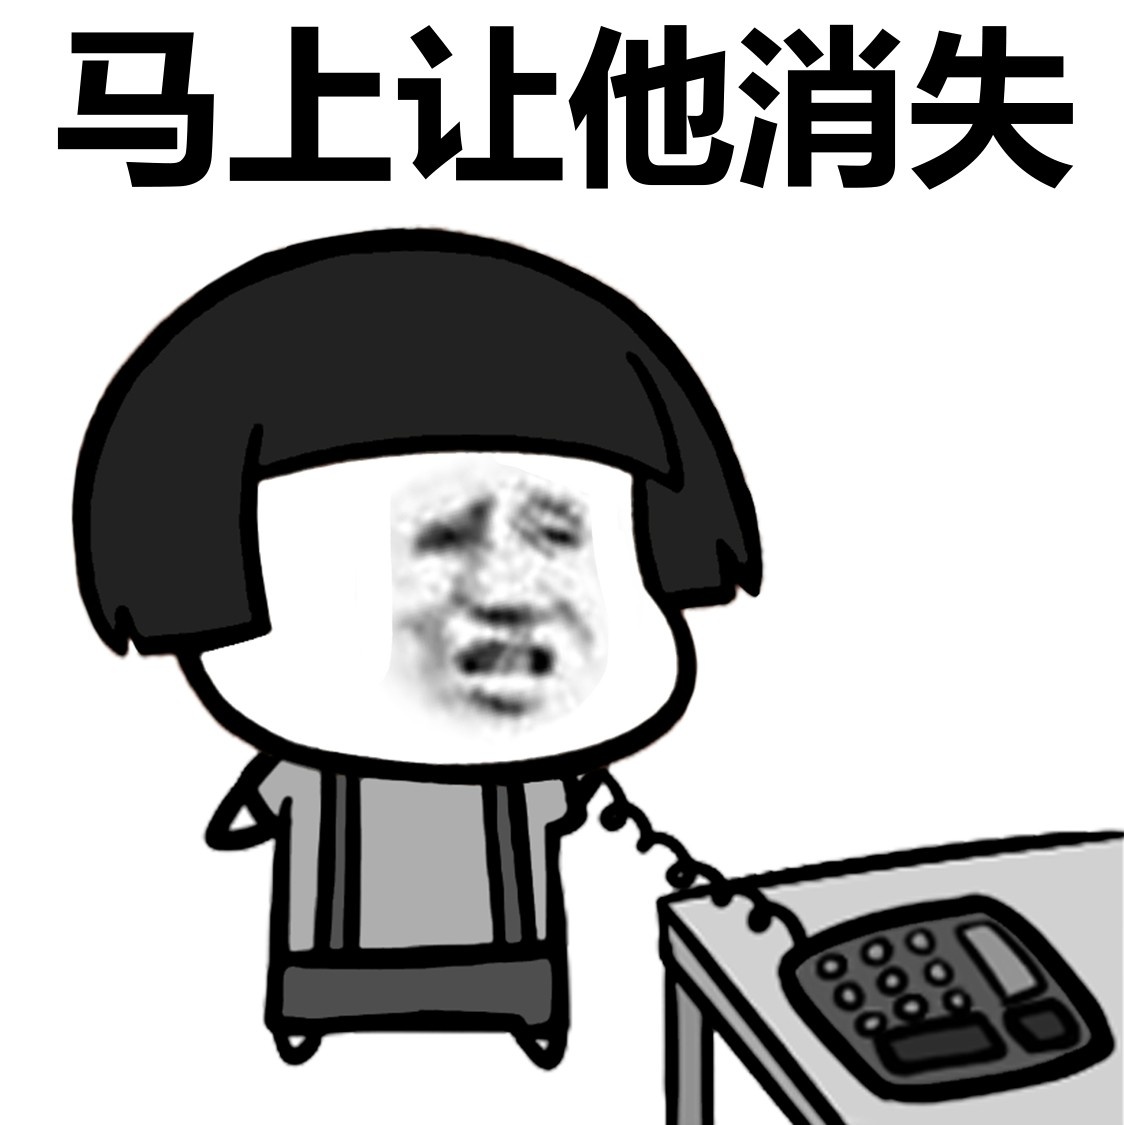 蘑菇头筷子敲碗卡通设计gif动图_动态图_表情包下载_SOOGIF